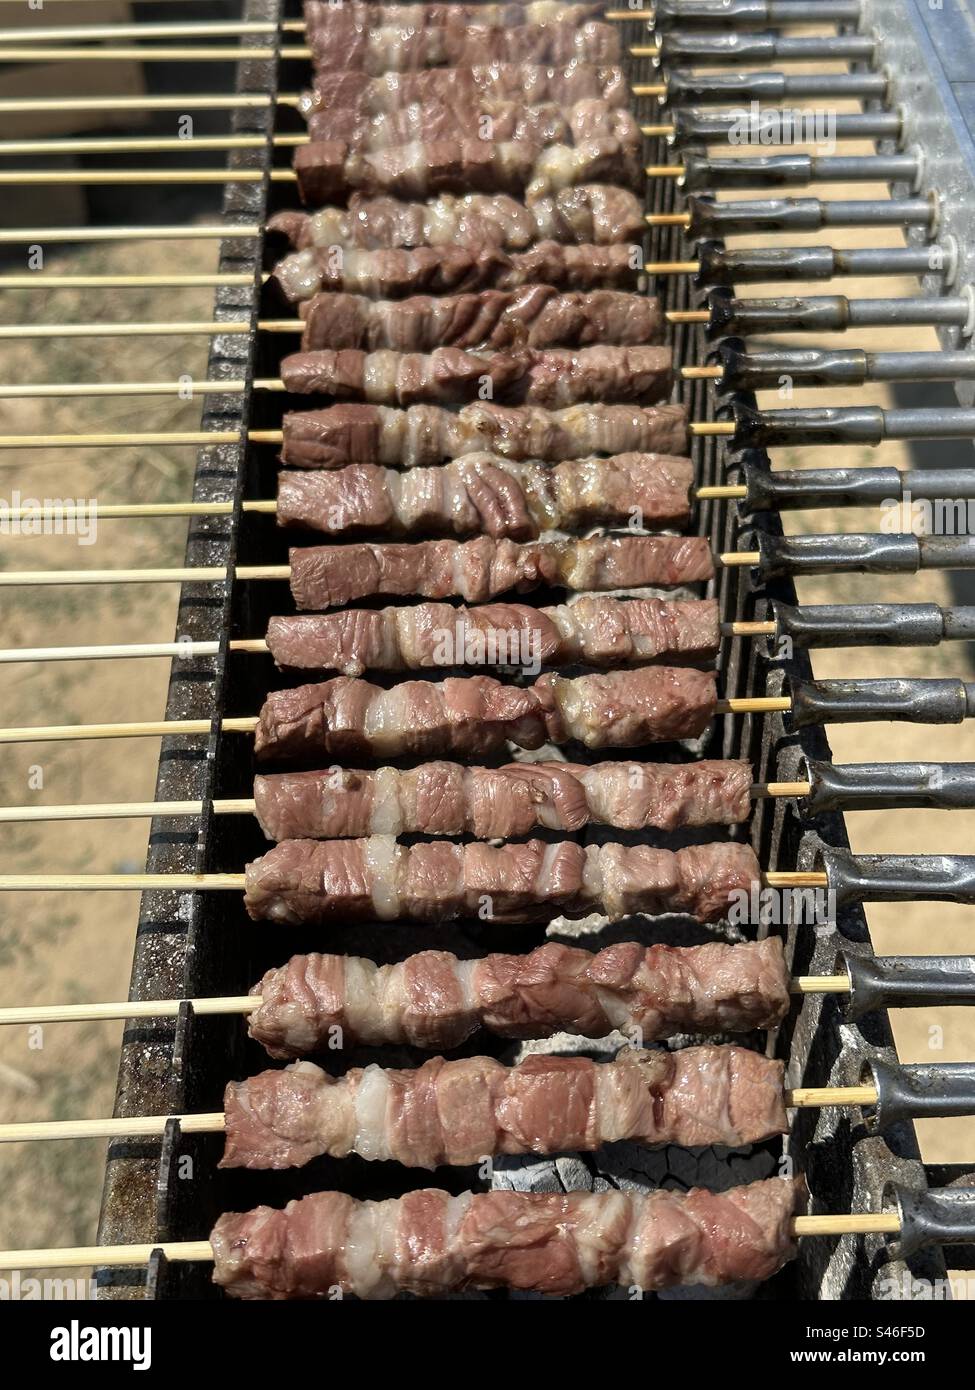 Arrosticini, traditionelle Gerichte mit gegrilltem Fleisch, typisch für Molisana und die abruzzesische Küche, hergestellt aus Hammel- oder Lammfleisch, in Stücke geschnitten und von einem Spieß durchbohrt Stockfoto